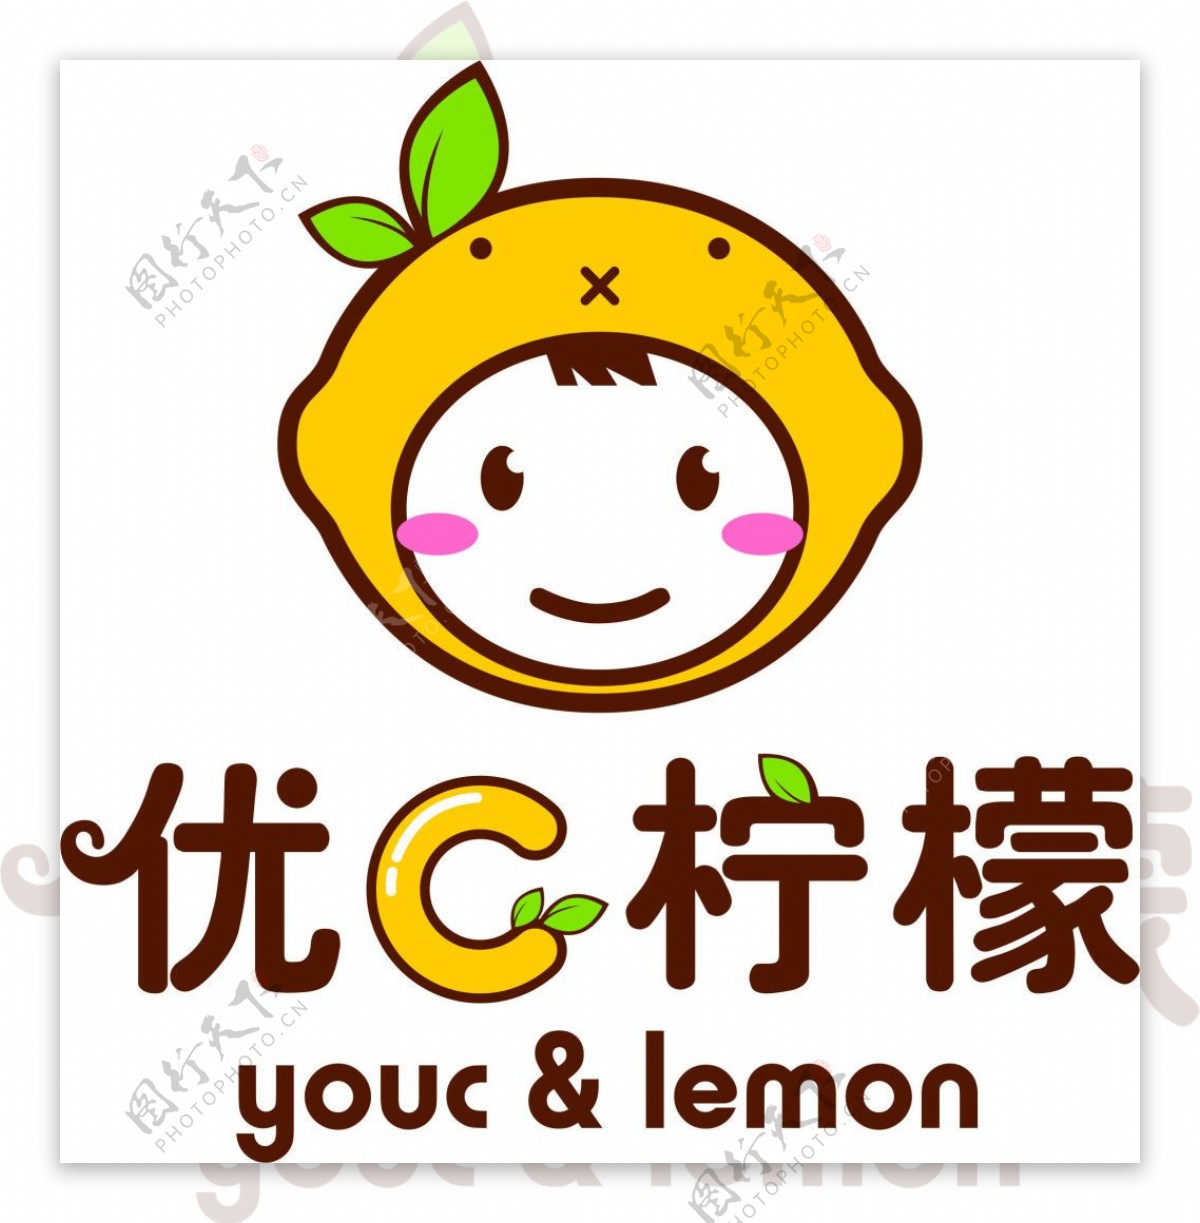 优C柠檬